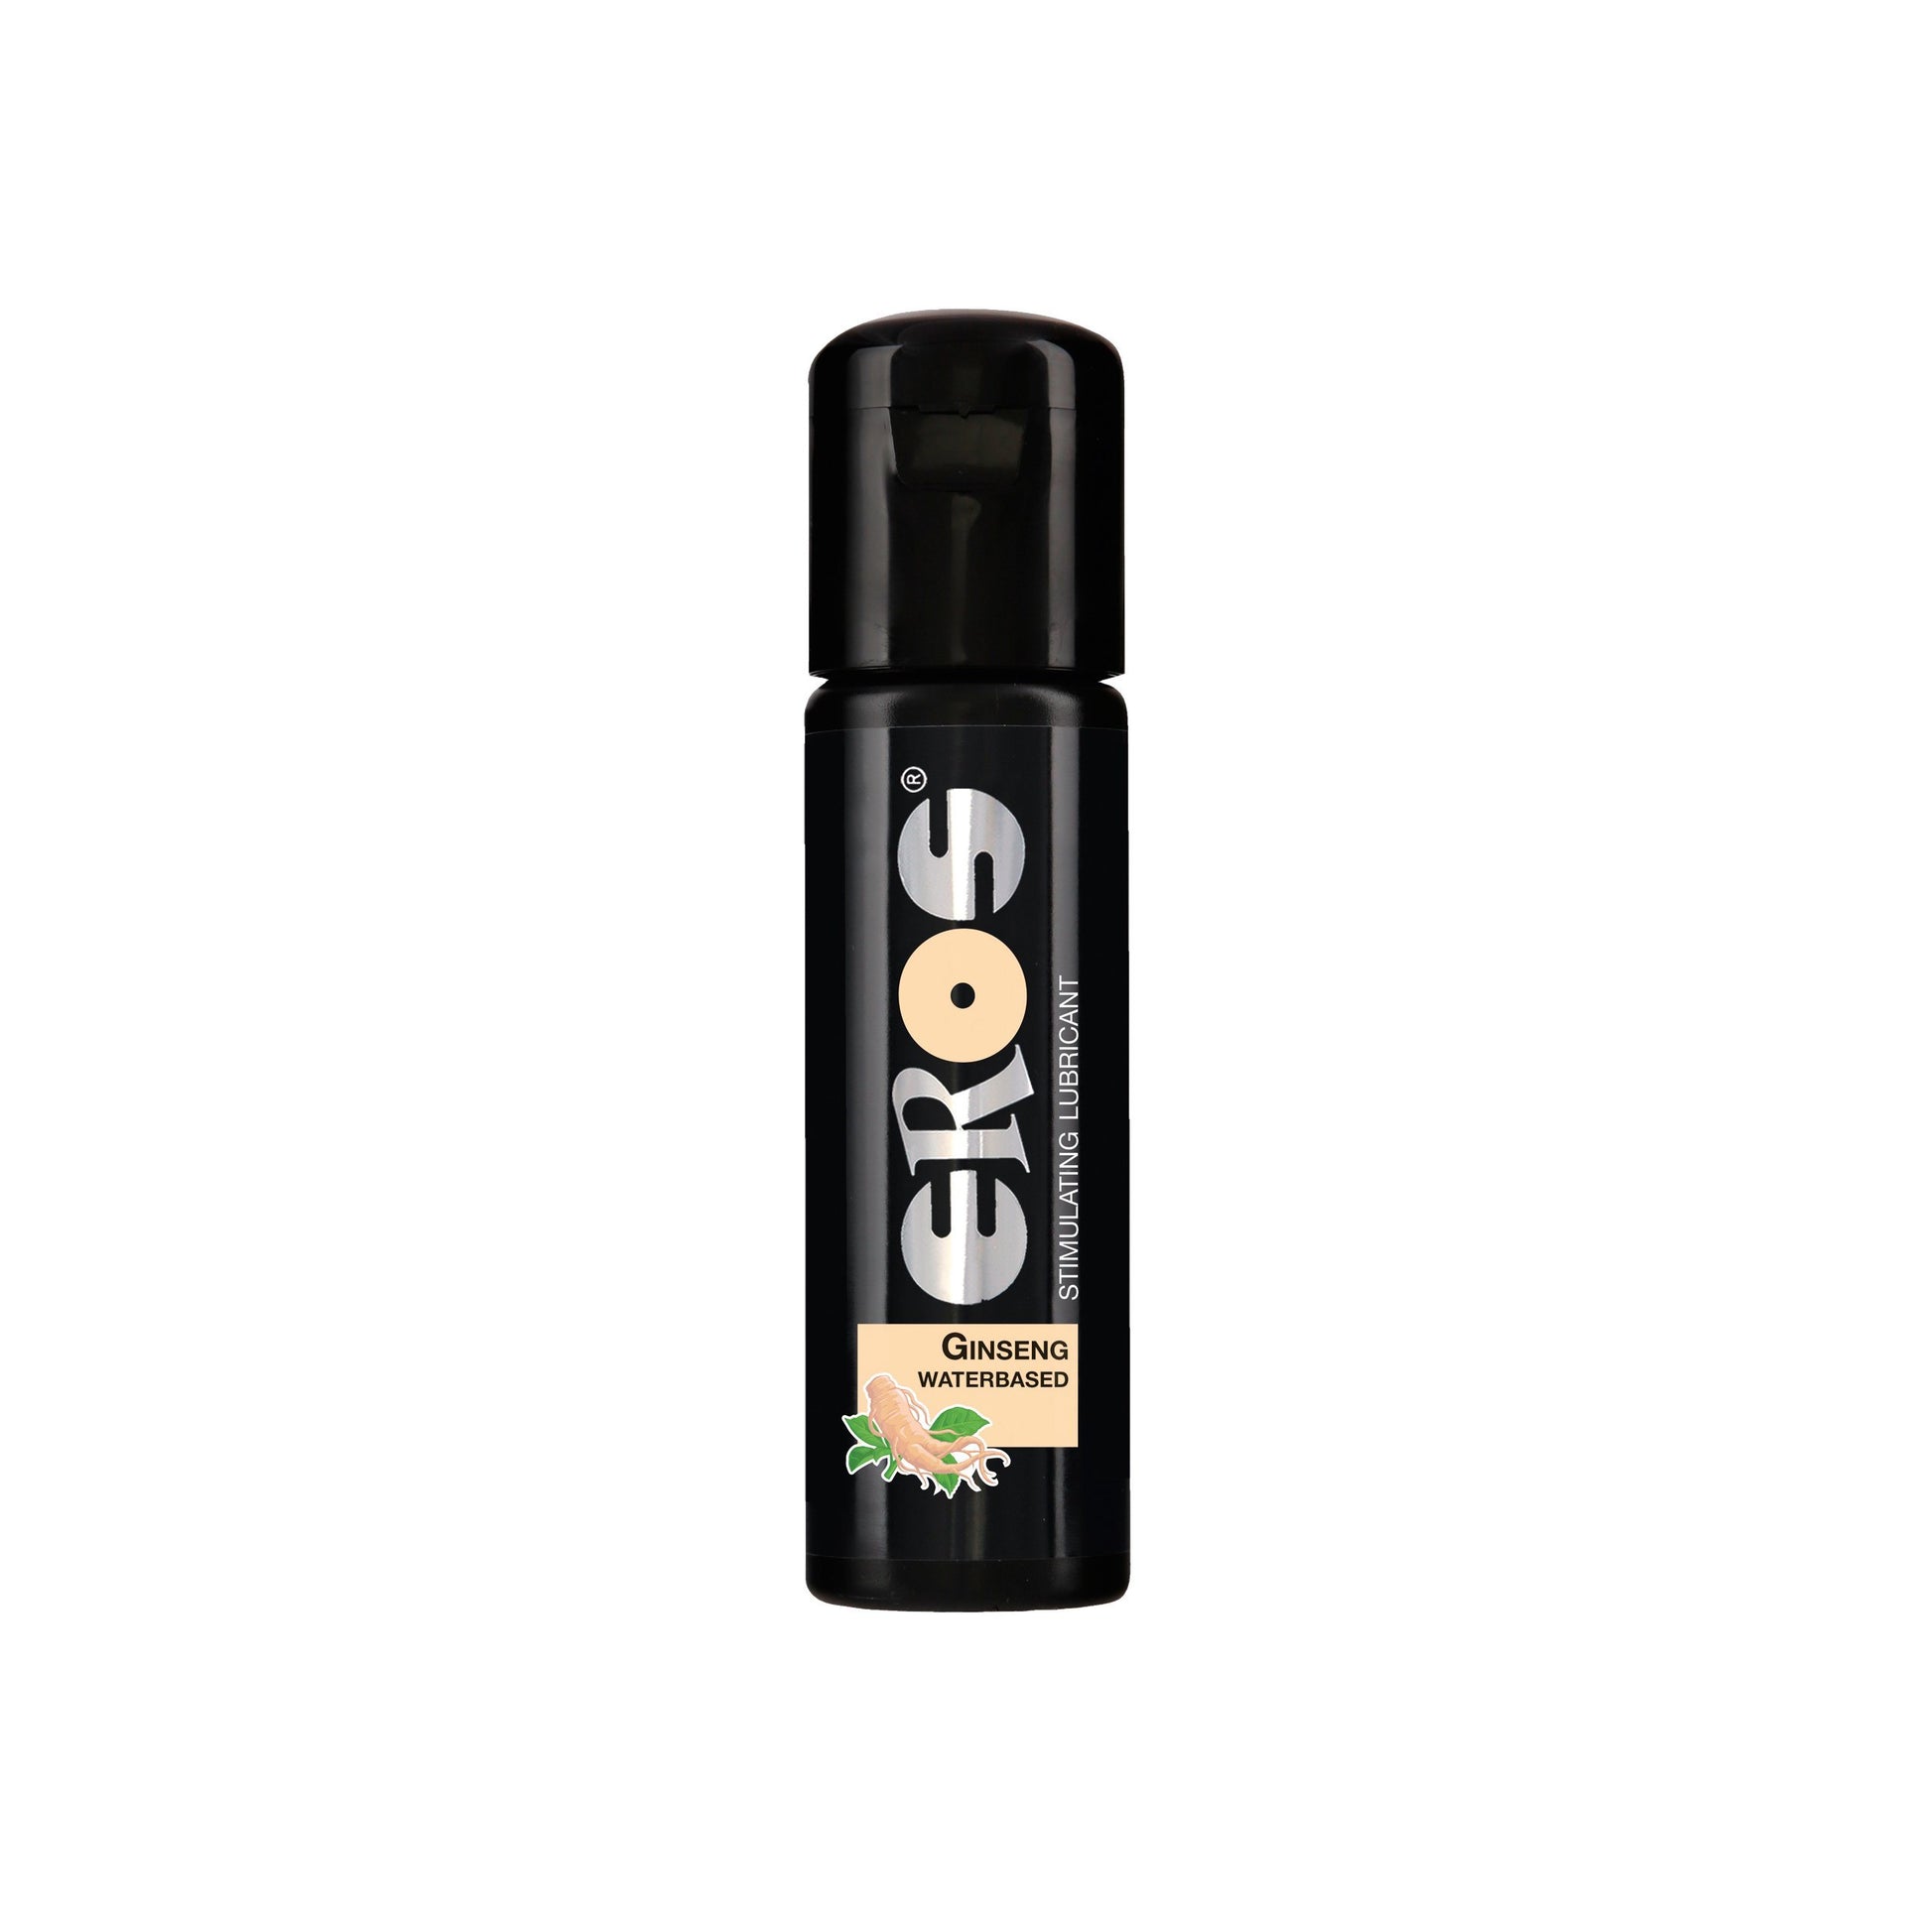 EROS 草本人蔘水性潤滑液 100 毫升 潤滑液 購買